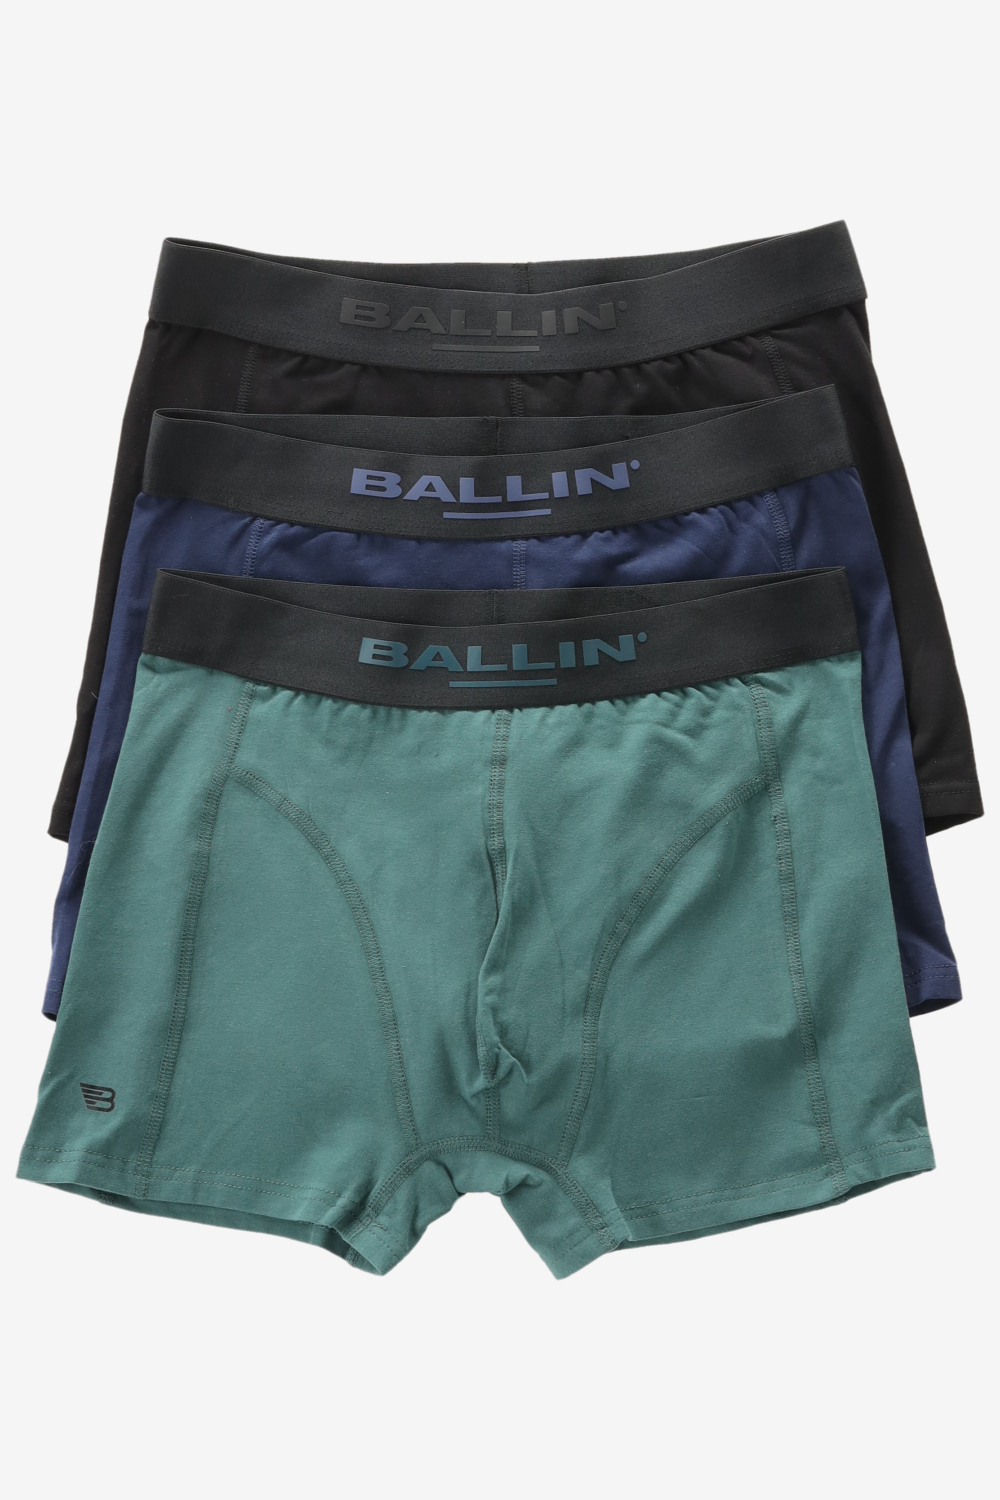 Ballin Underwear